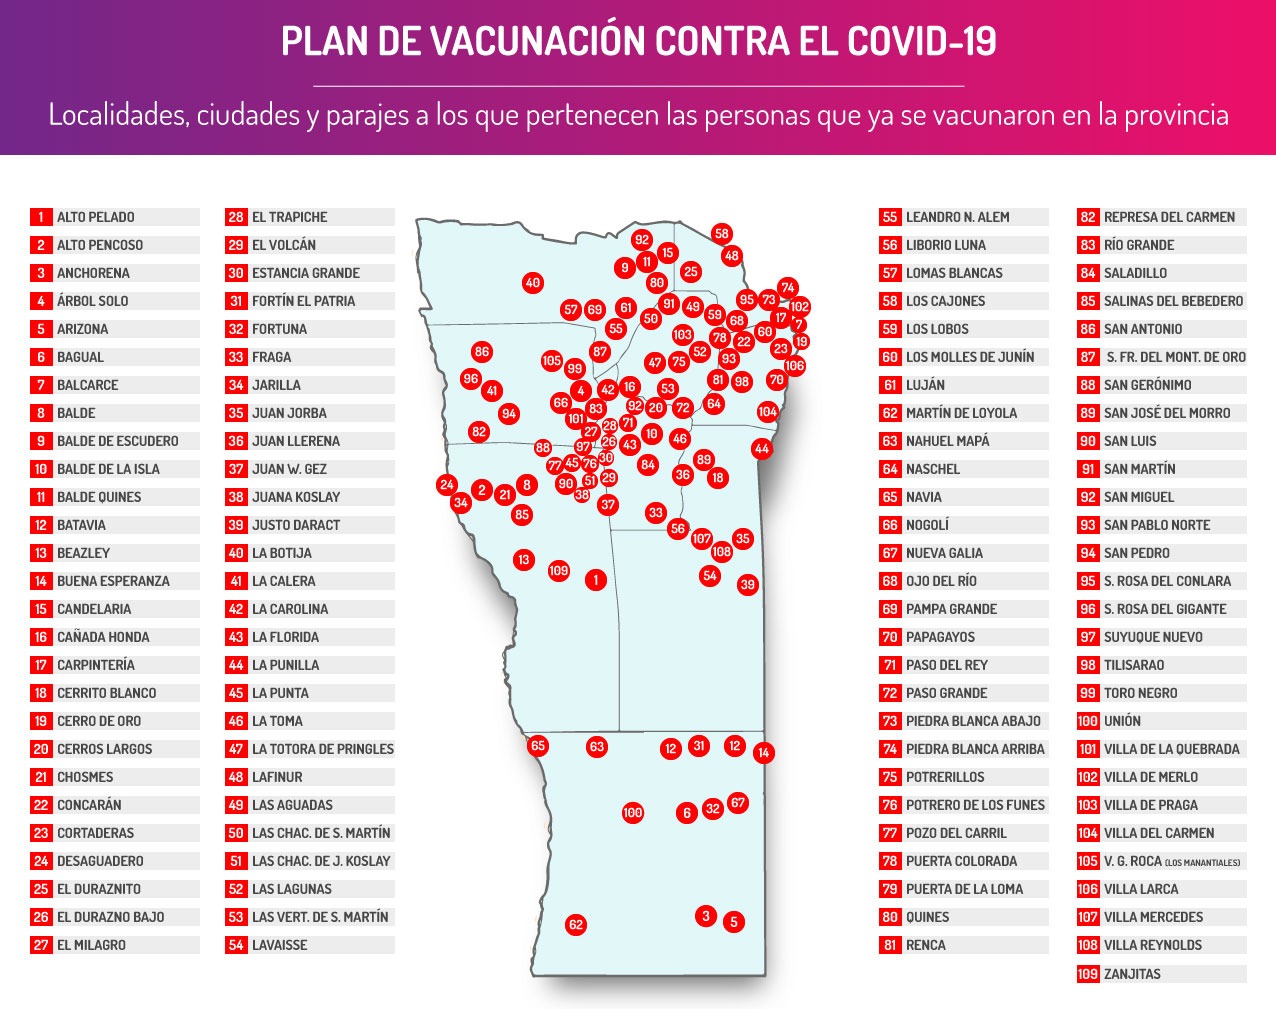 La campaña de vacunación contra el COVID-19 sigue avanzando y posiciona a San Luis como la segunda provincia en el país